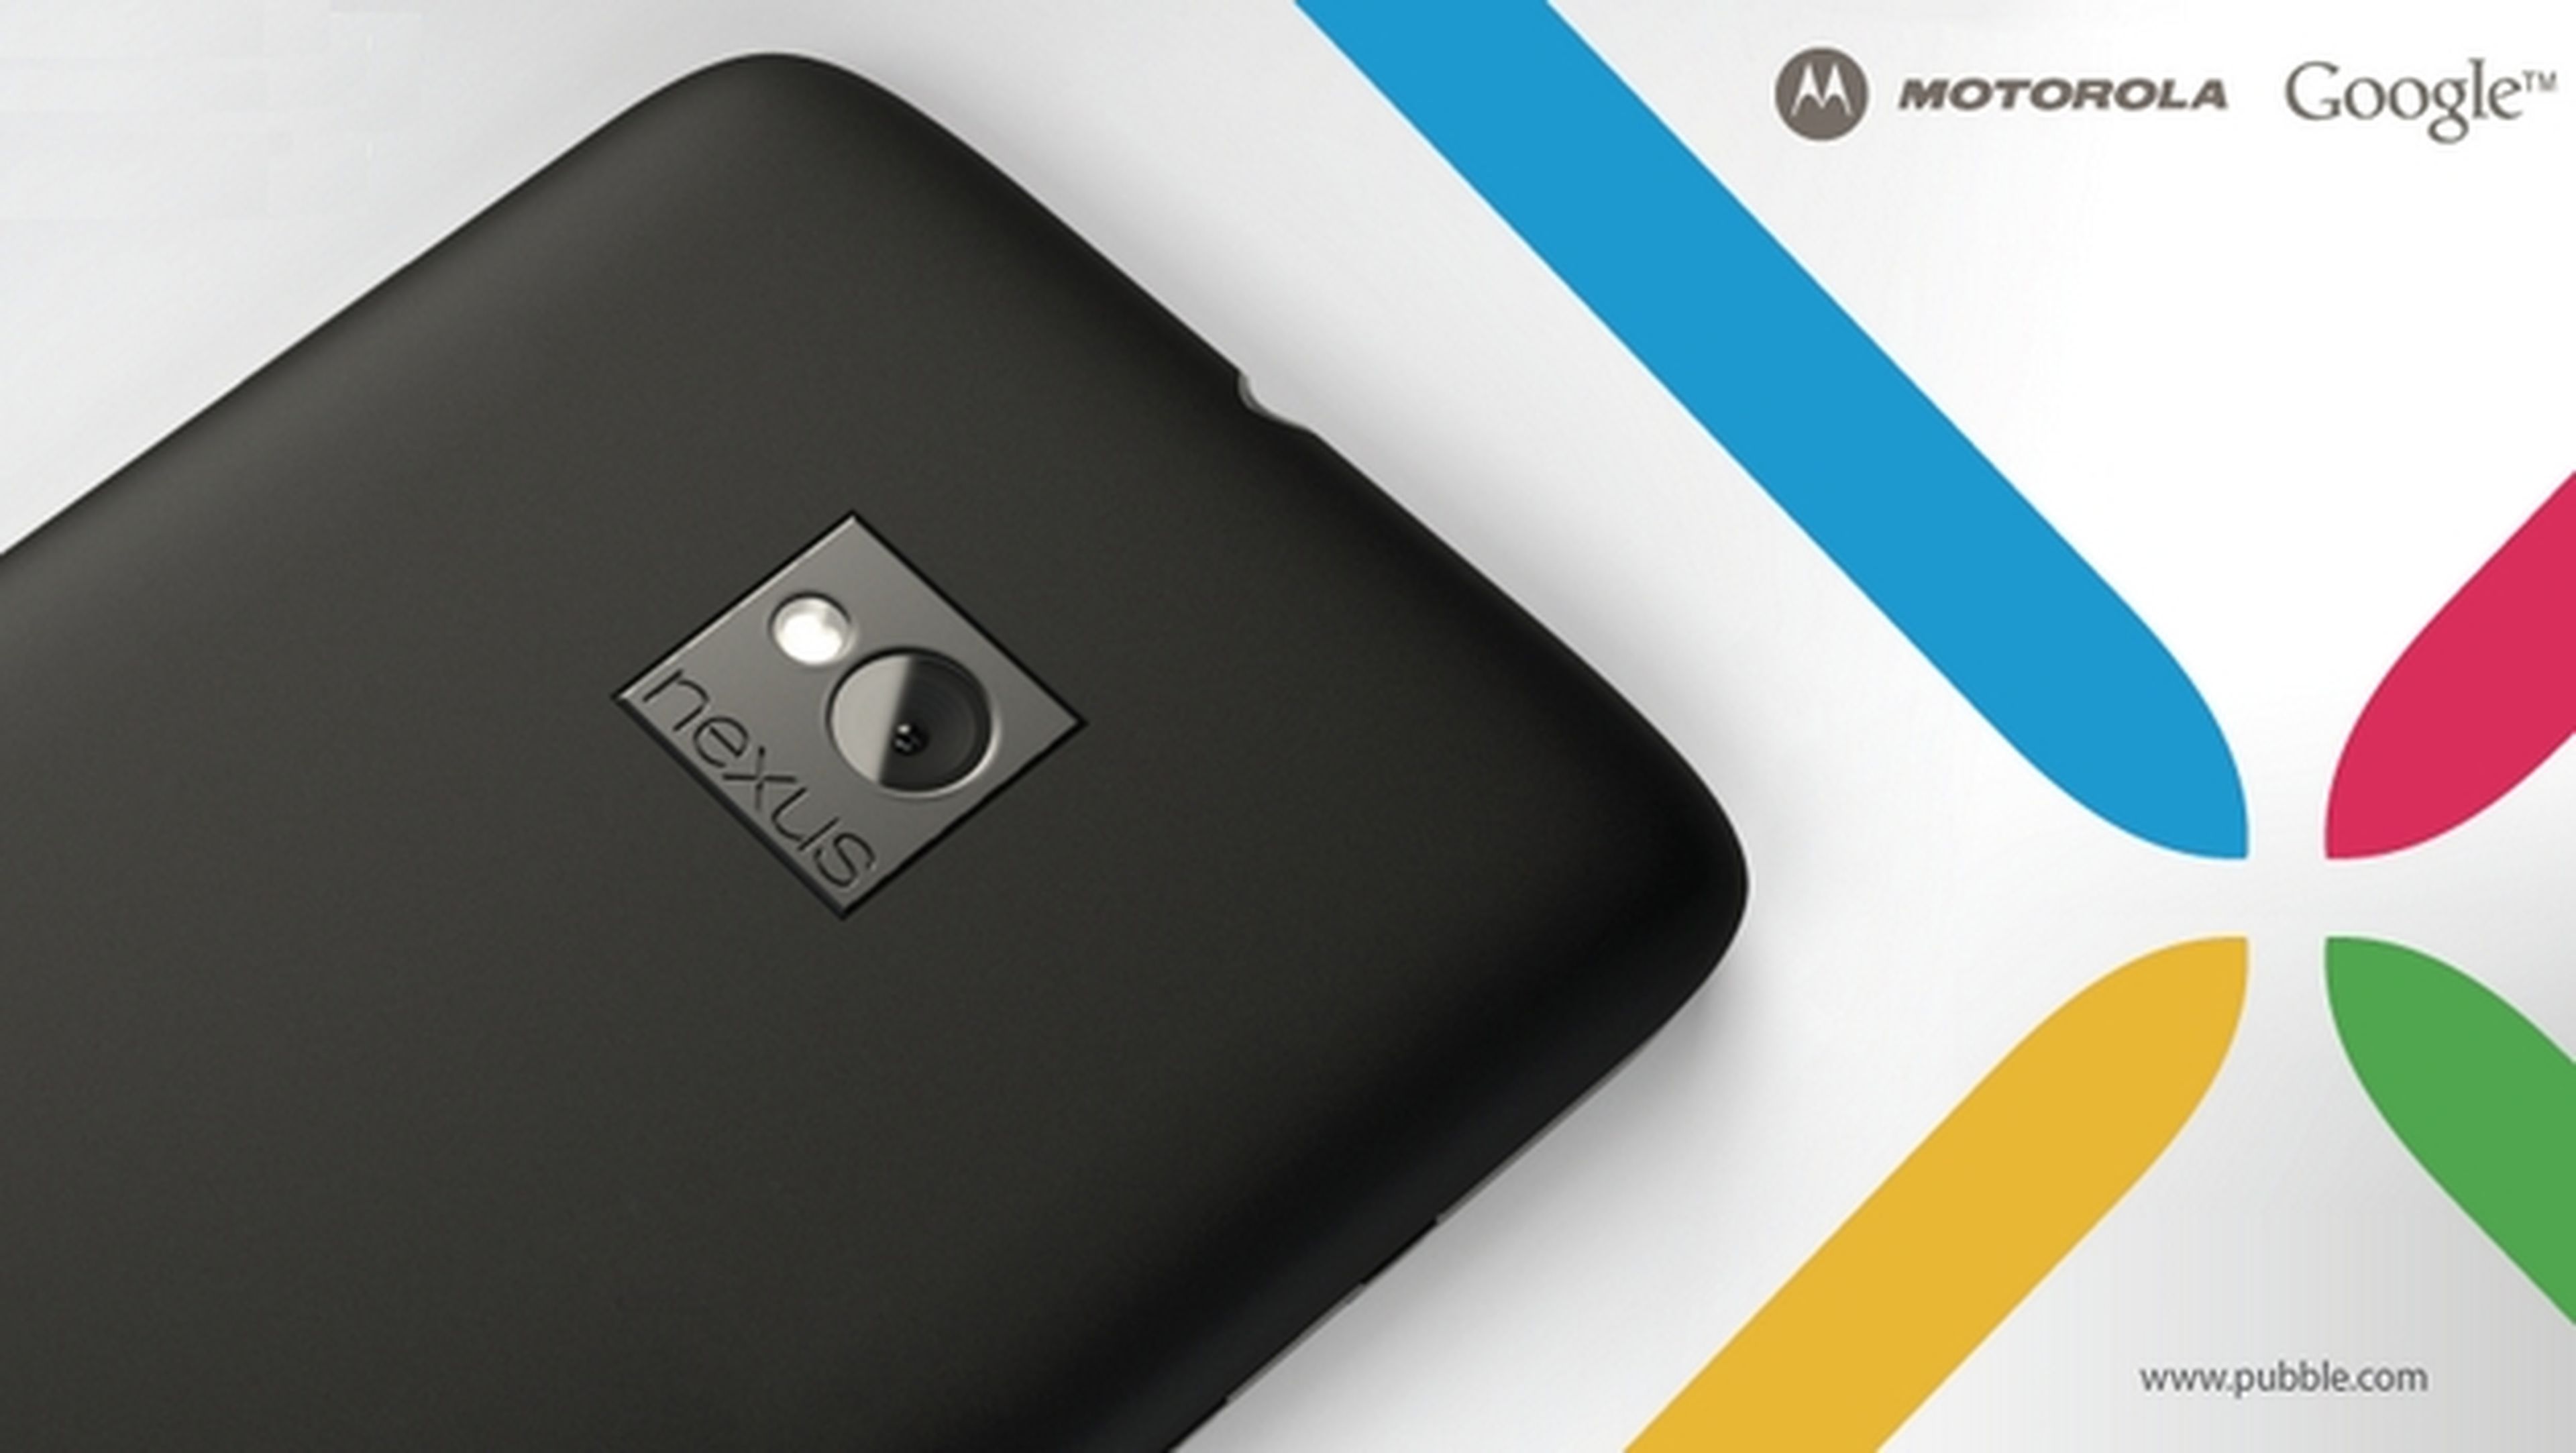 El nuevo Nexus 6 podría llamarse Shamu, fabricado por Motorola, con lector de huellas